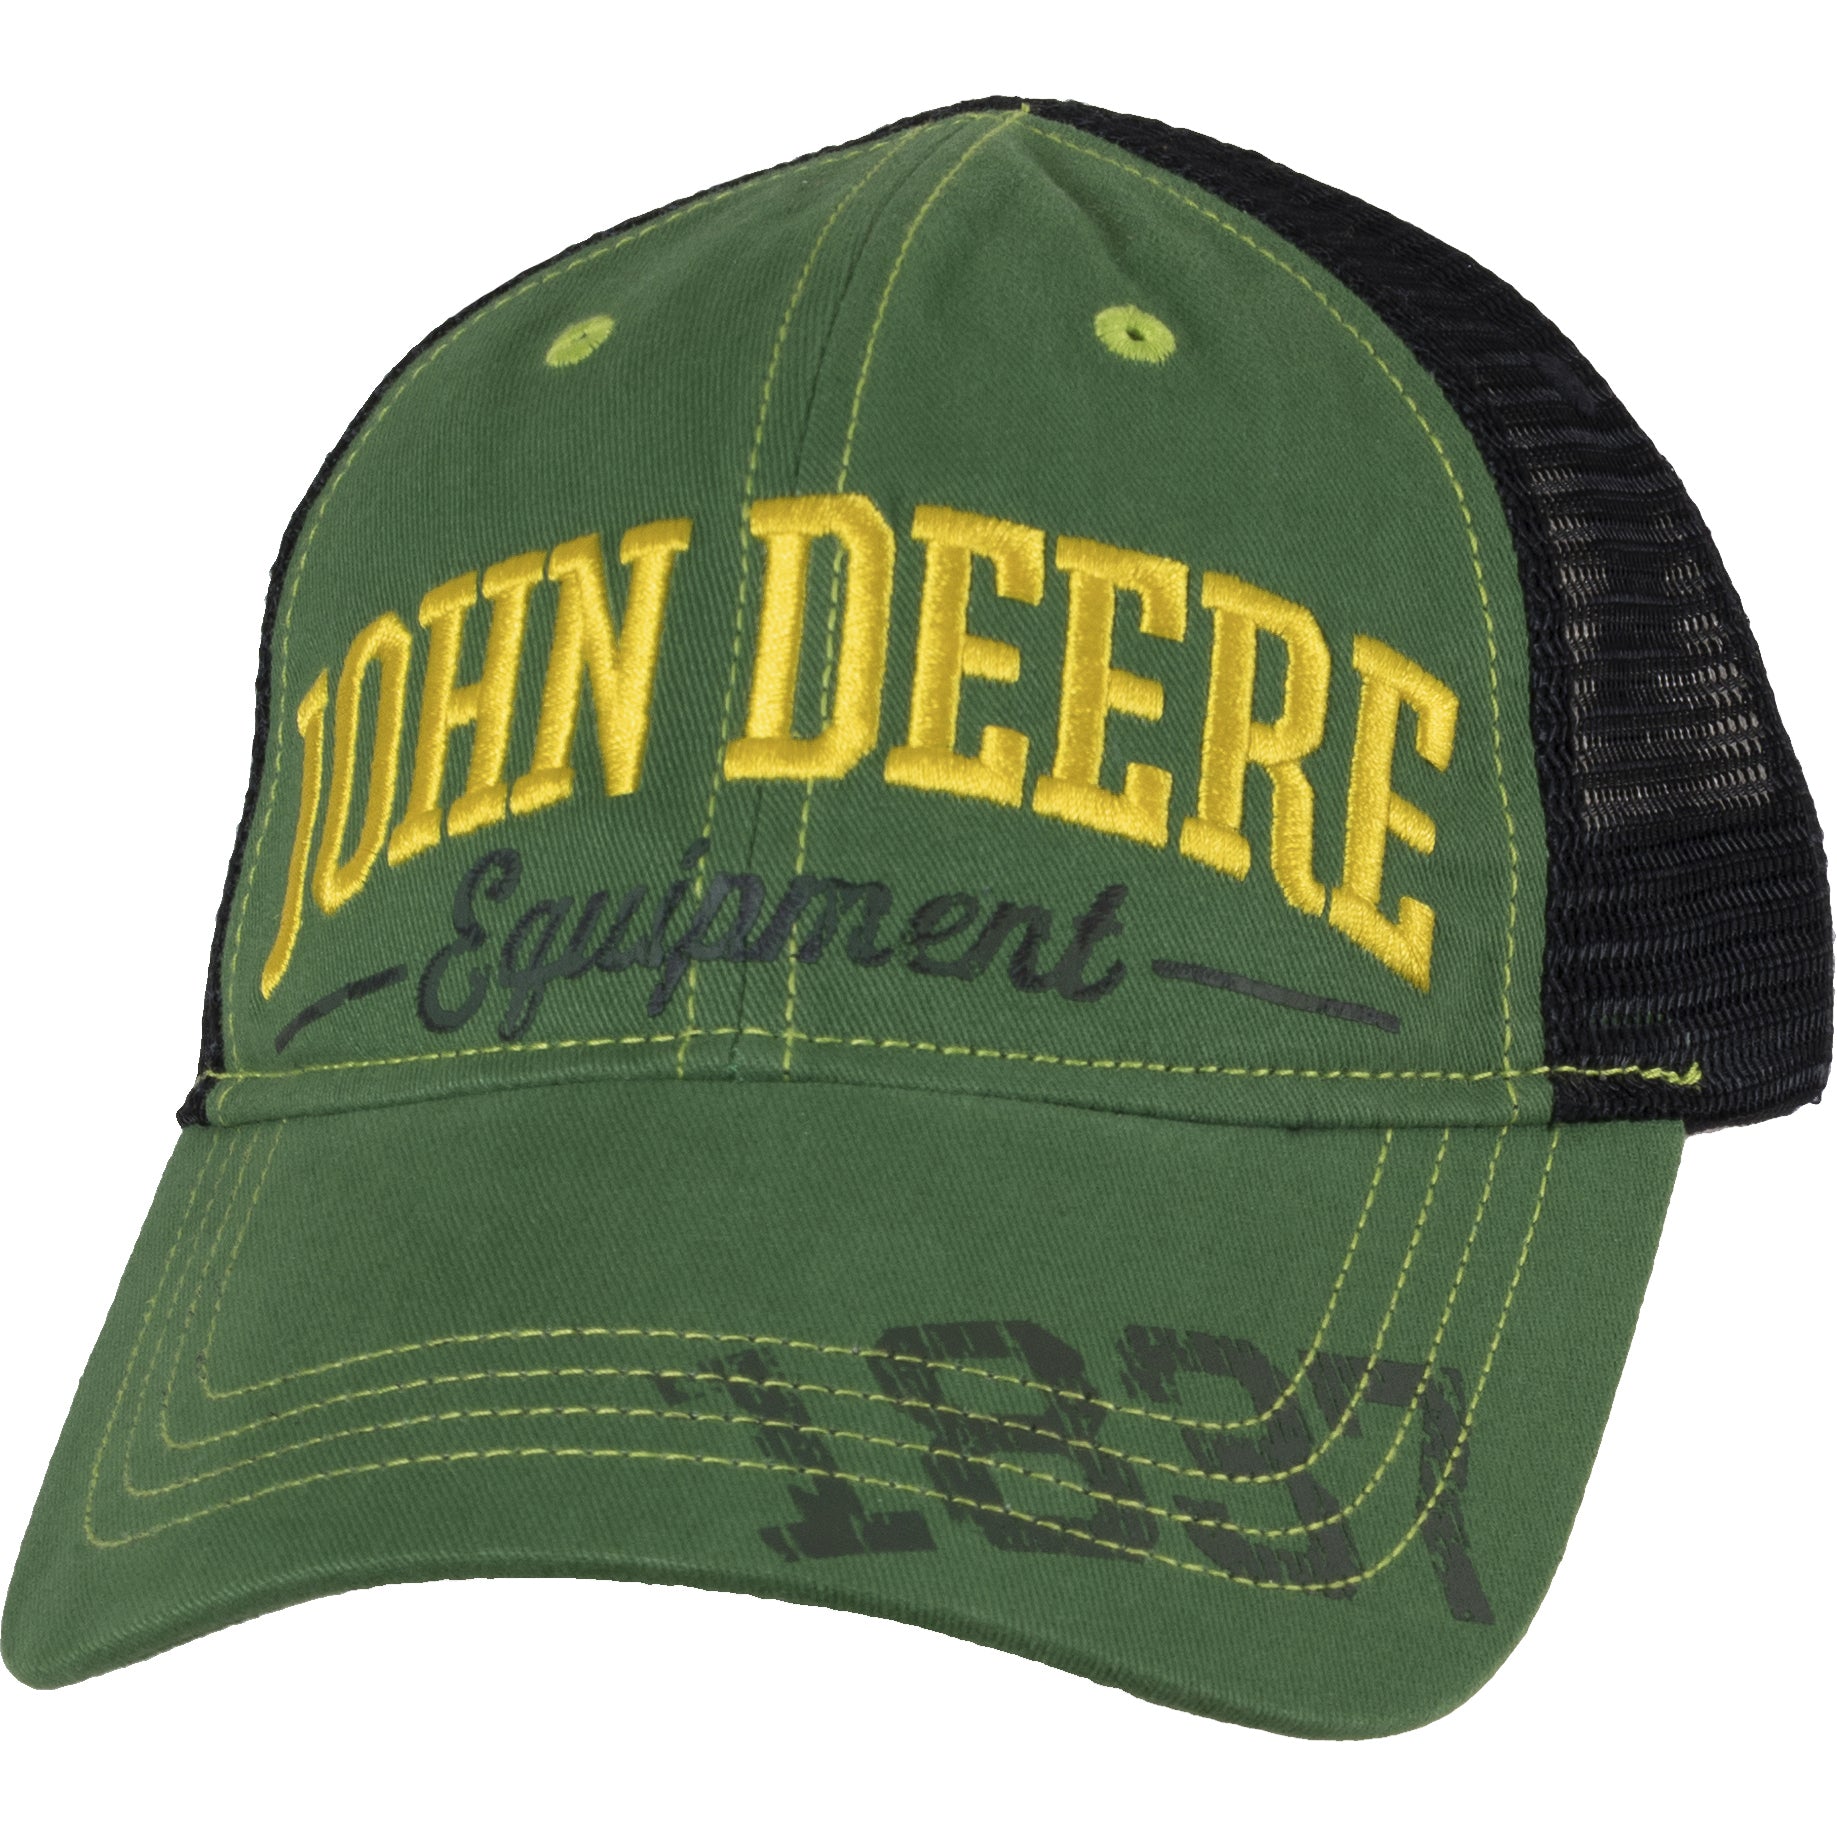 John Deere Men's Brown Cotton Baseball Cap at